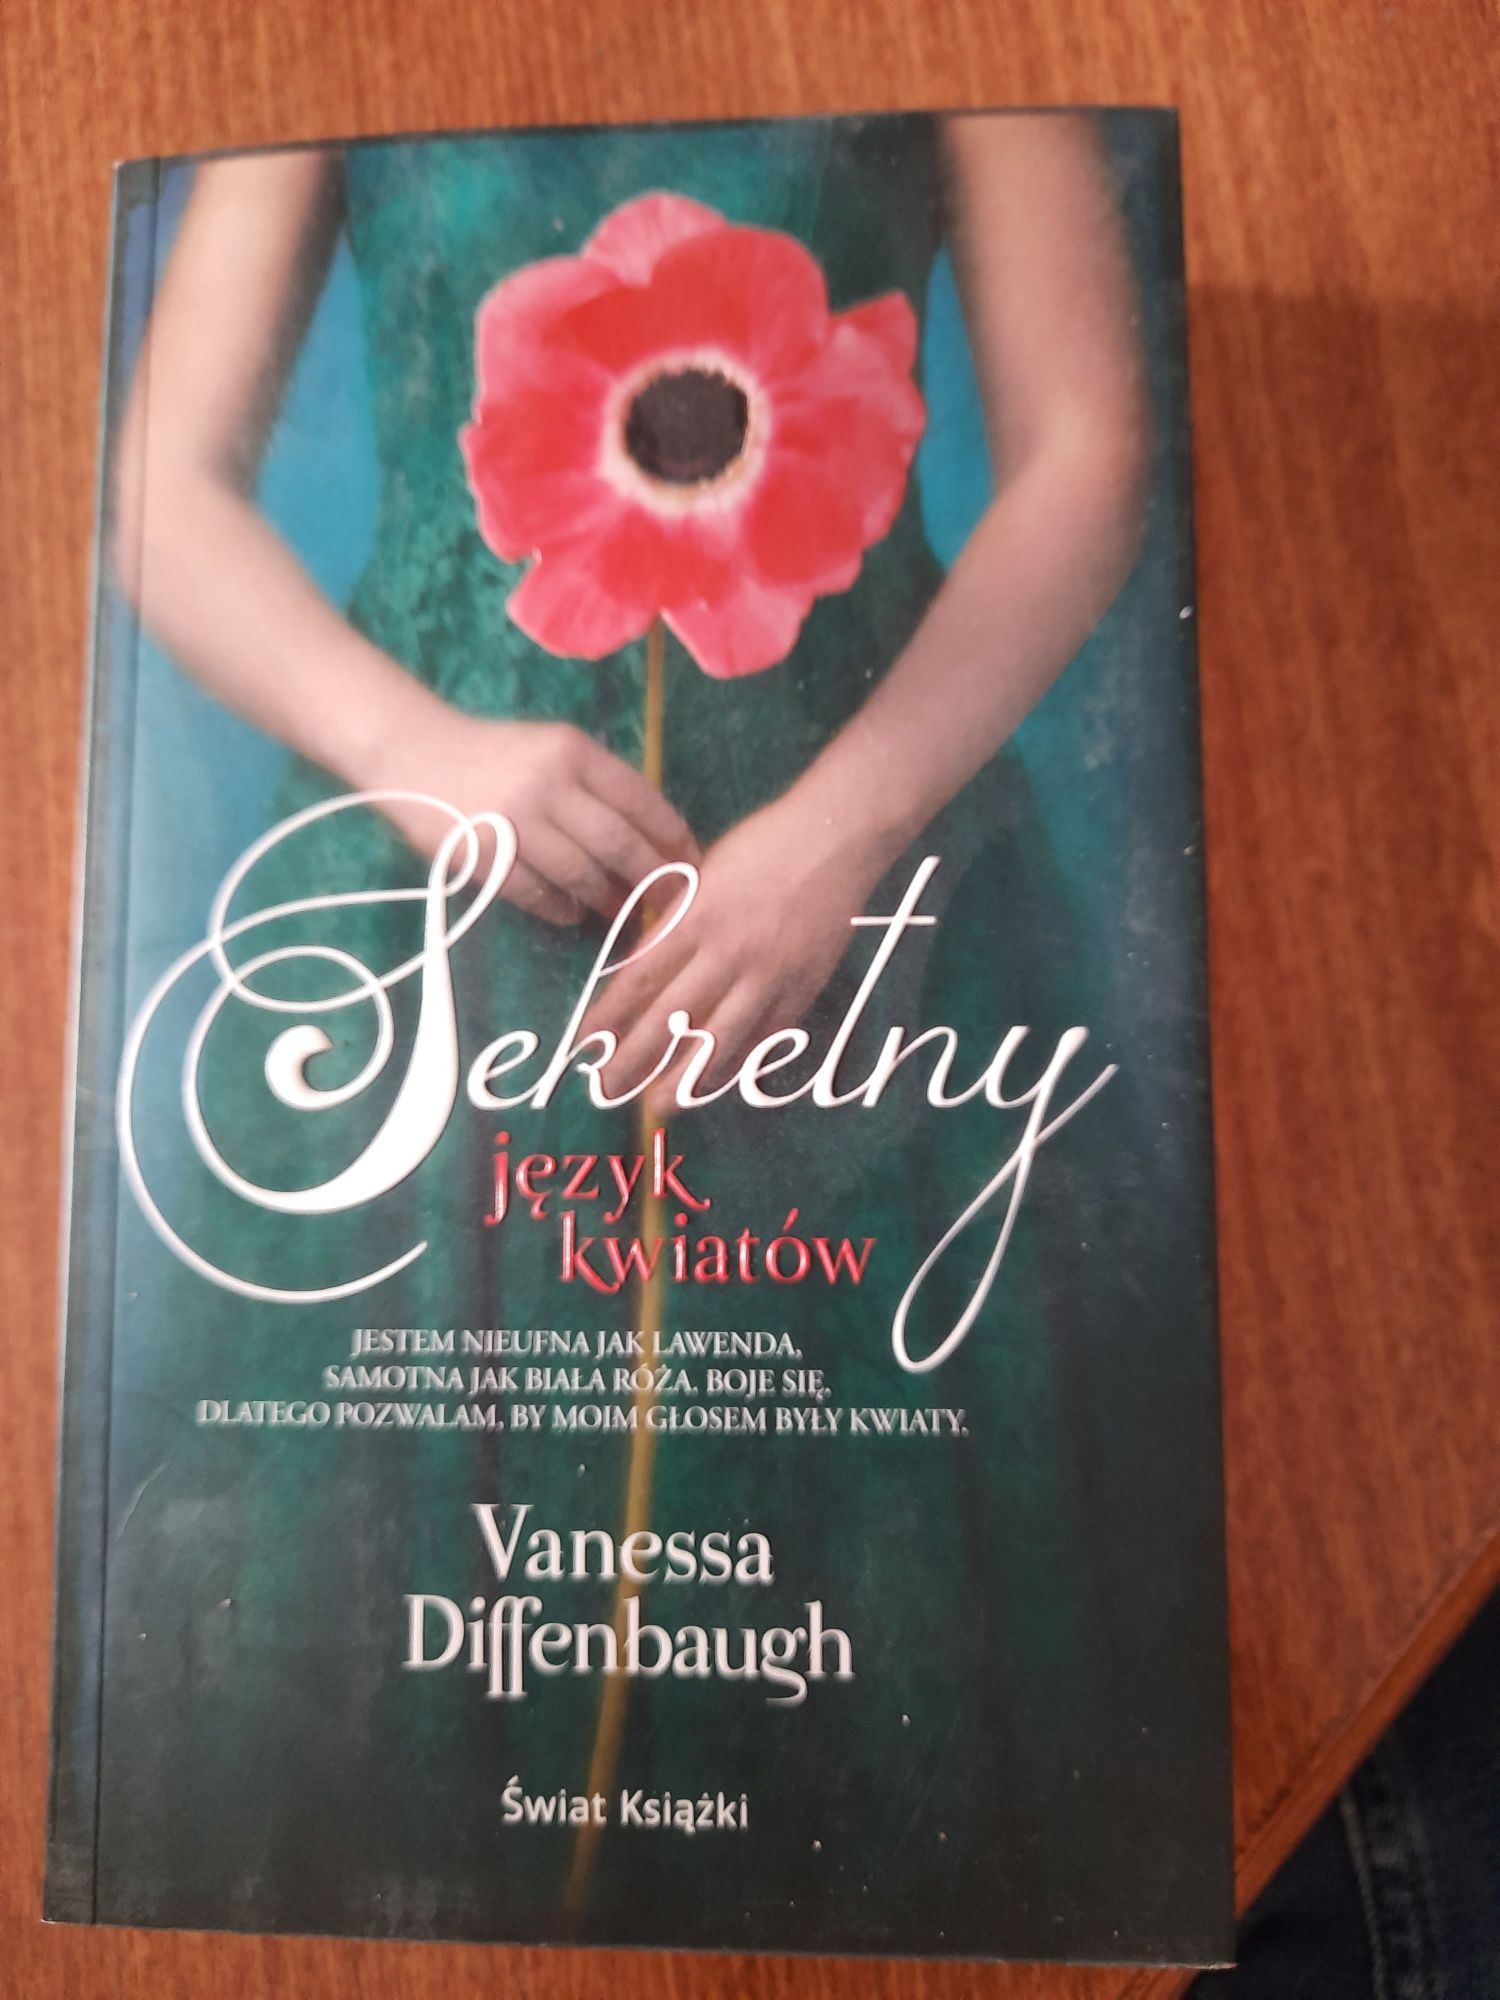 Sekretny język kwiatów Vanessa Diffenbaugh